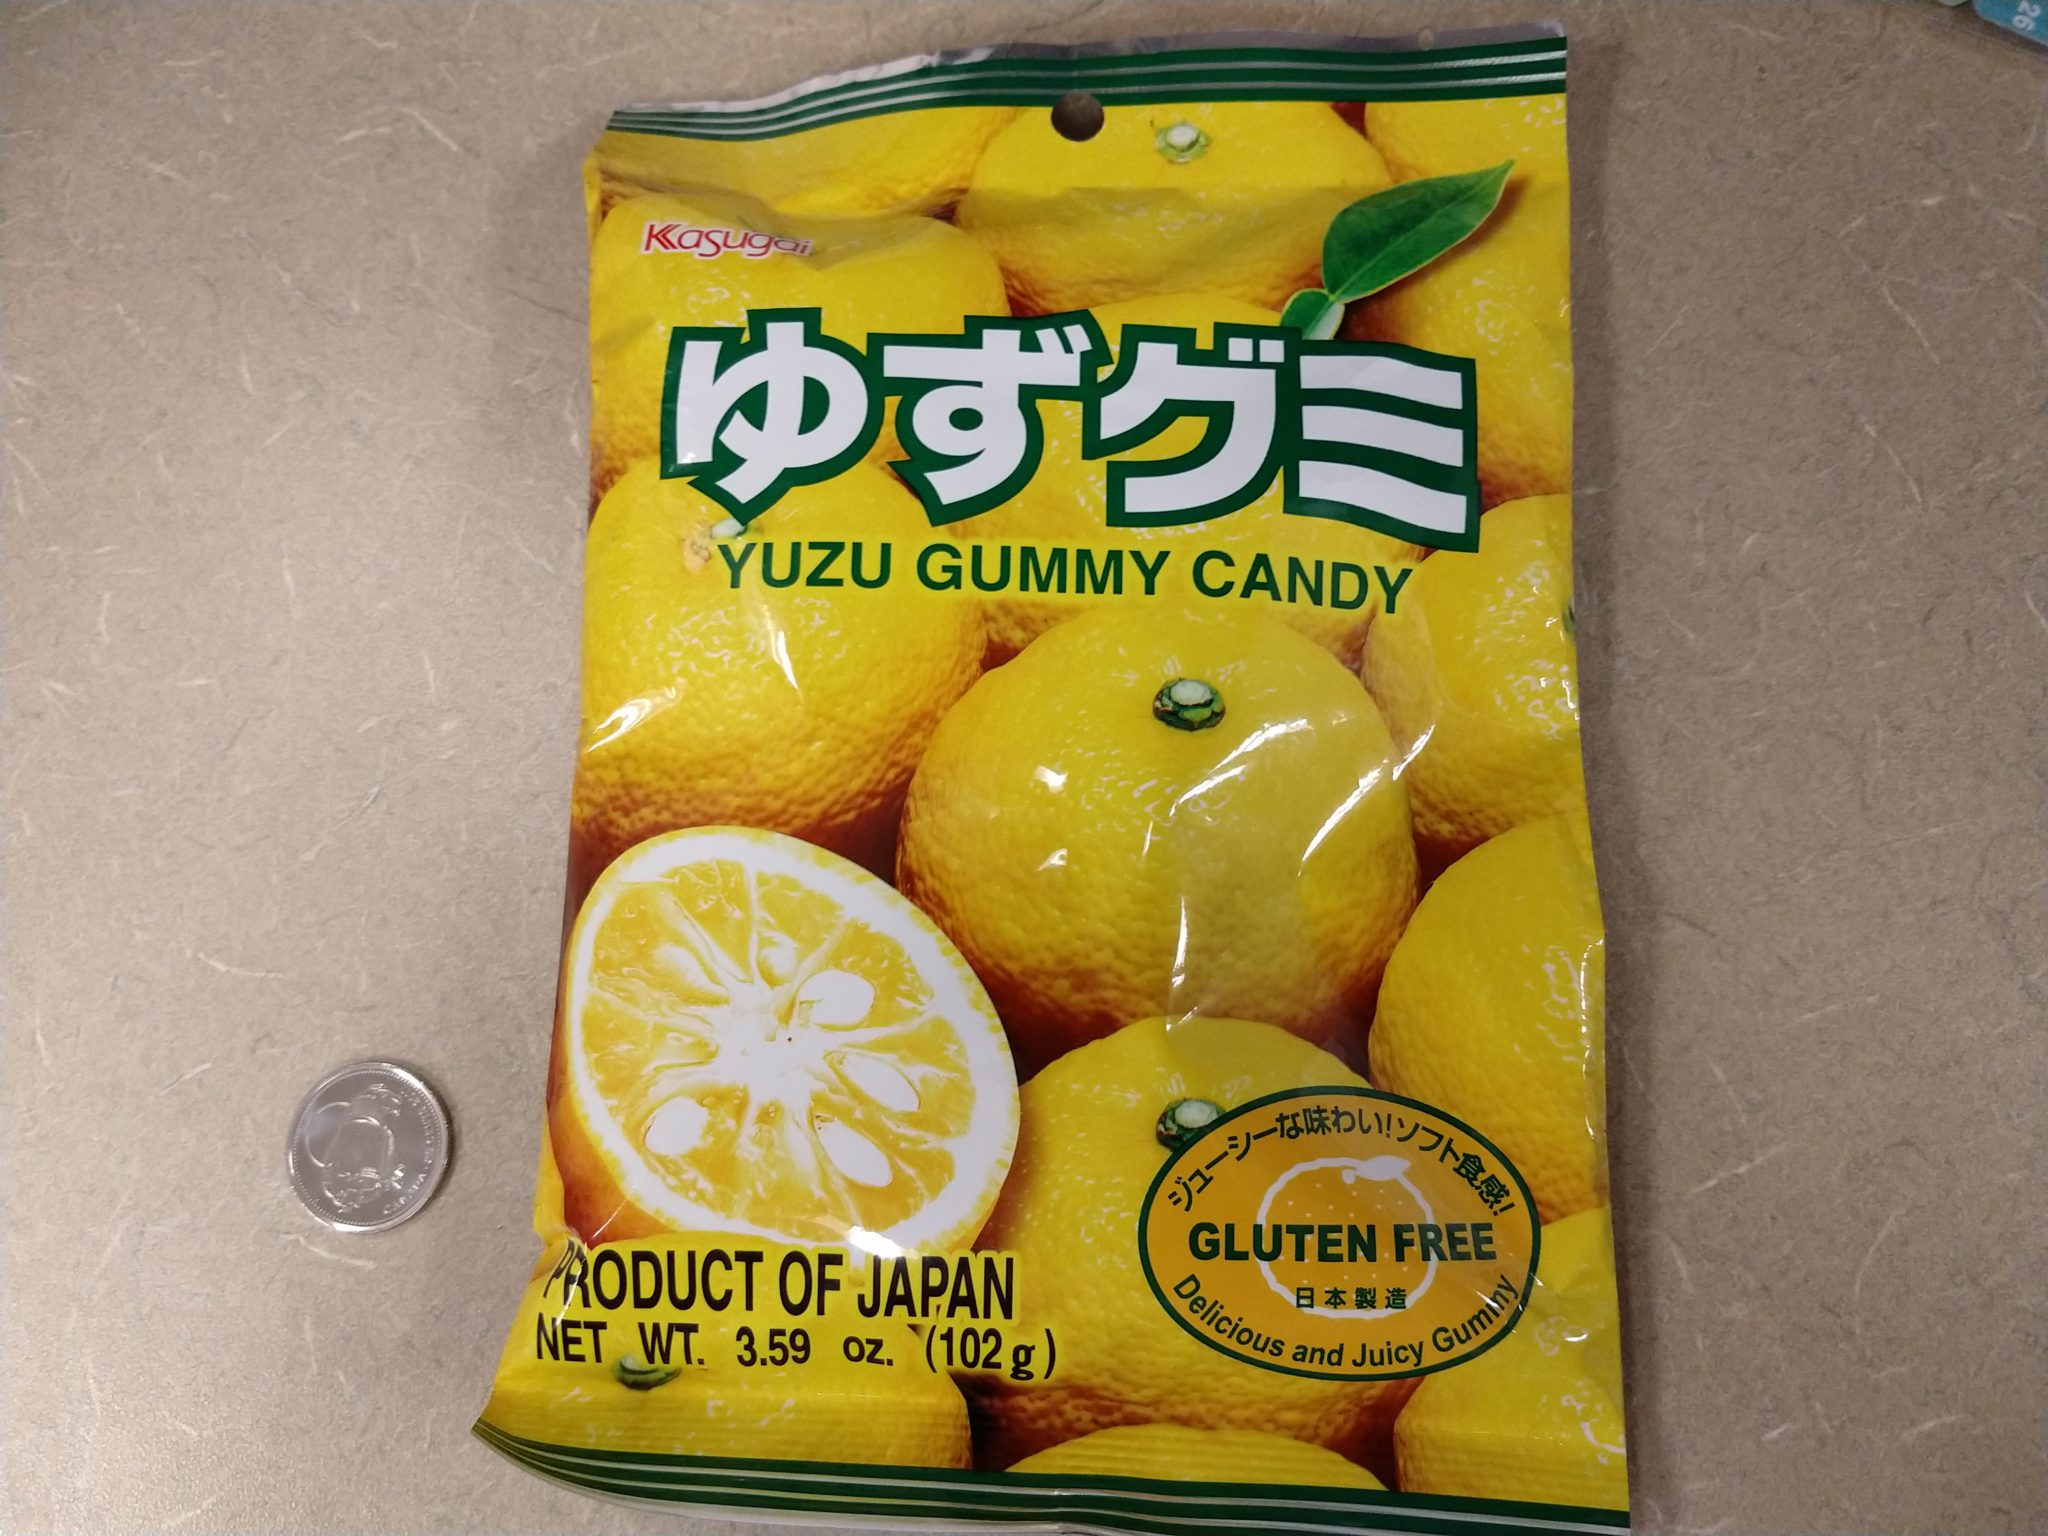 Kasugai – Yuzu Gummy Candy